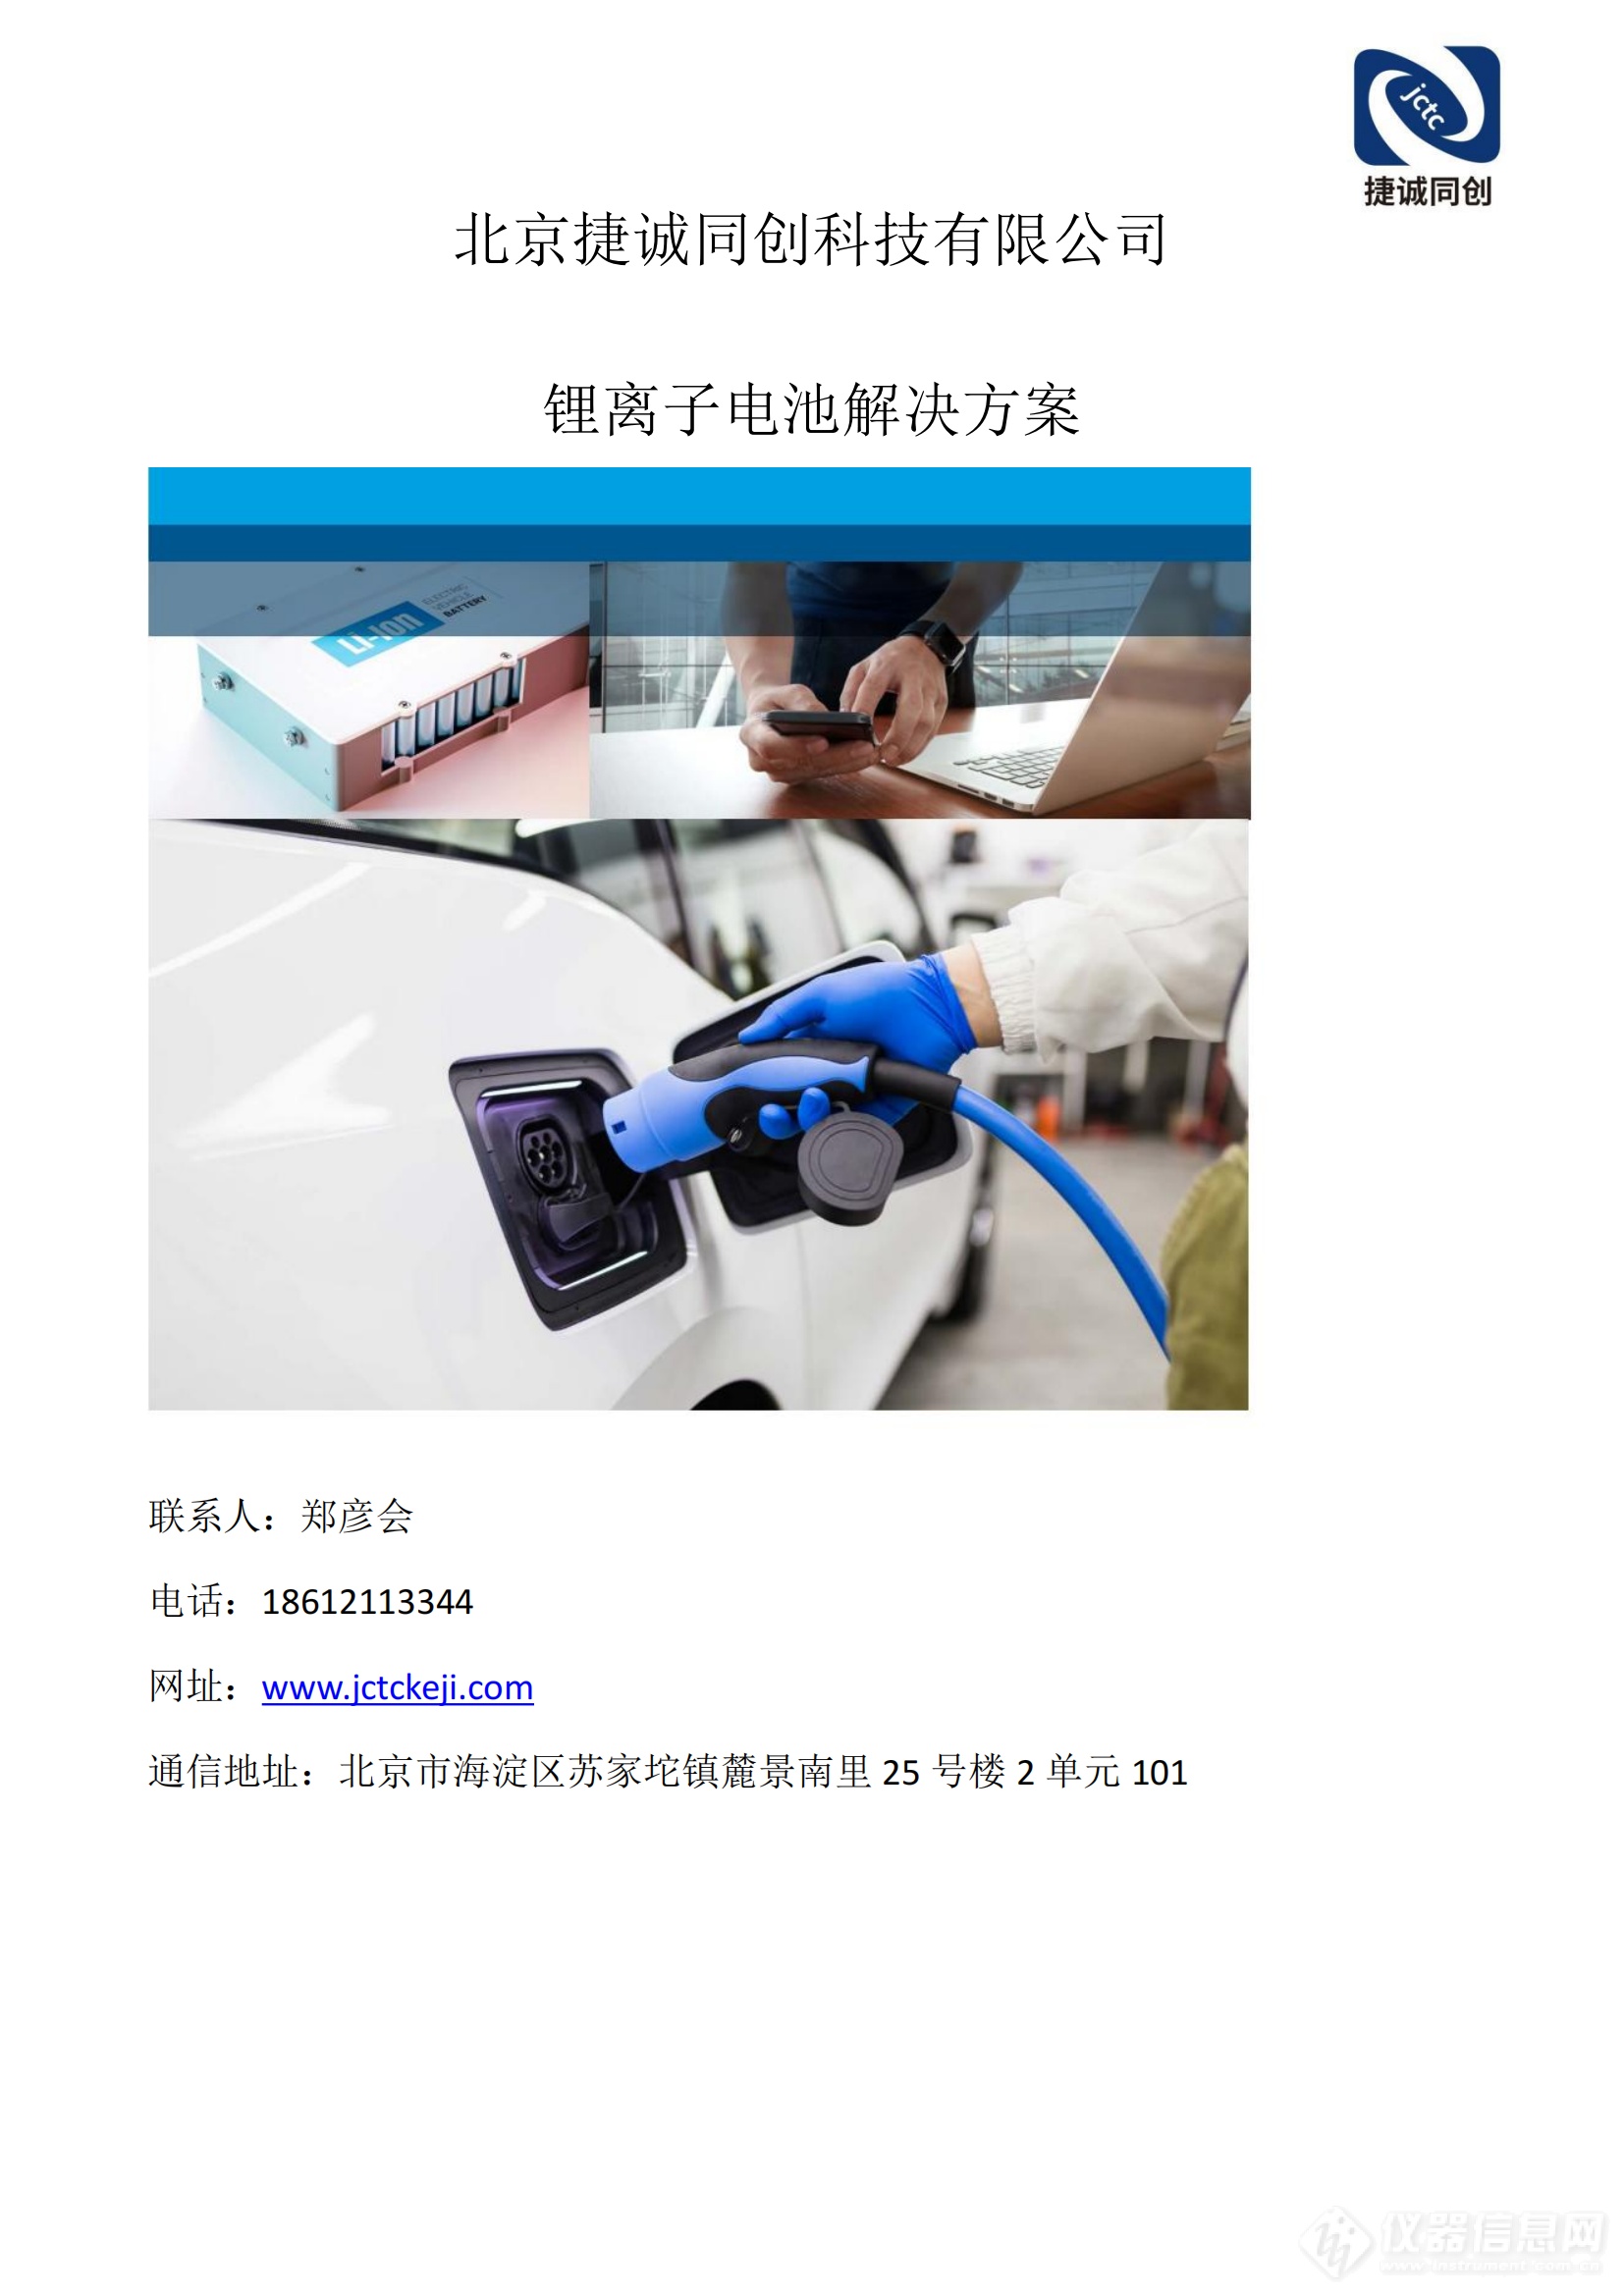 北京捷诚同创科技有限公司锂电池解决方案(2)_00.png